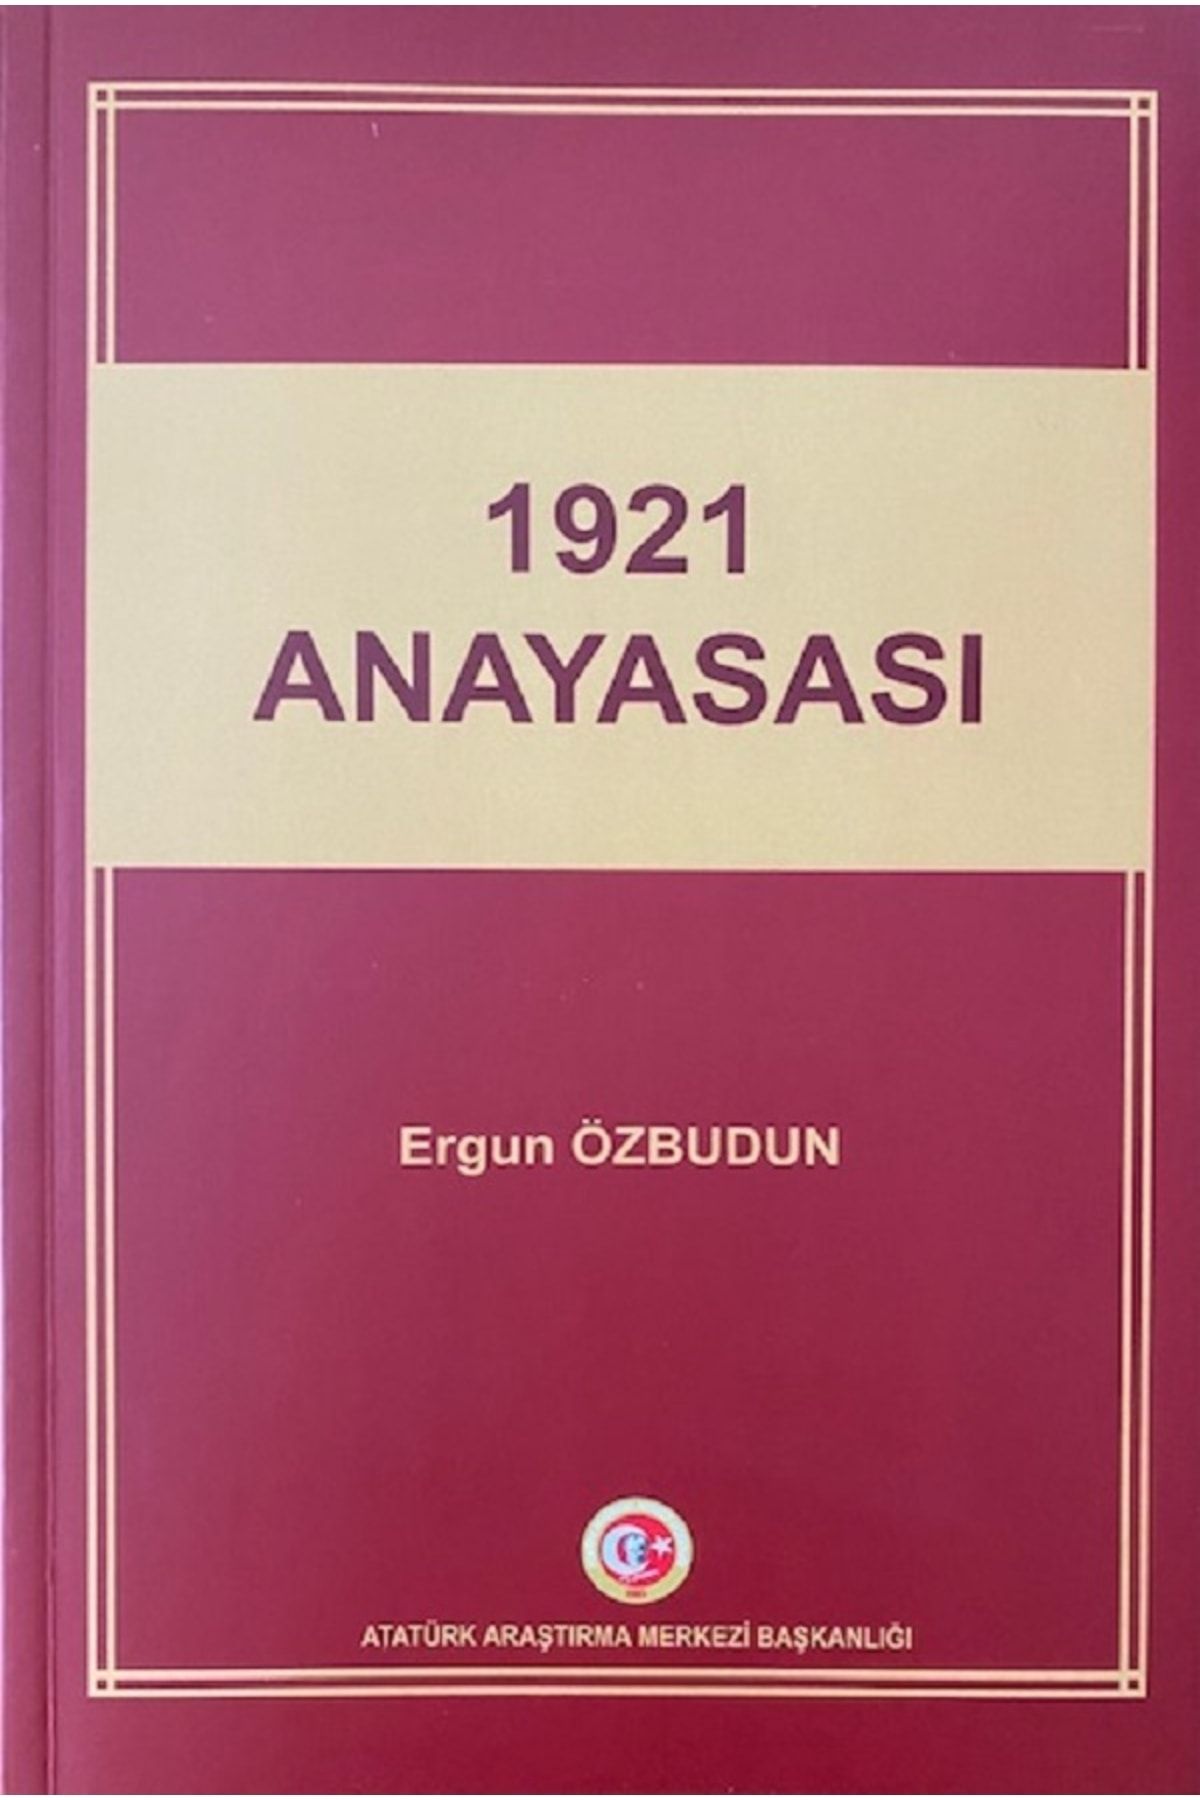 Atatürk Araştırma Merkezi 1921 Anayasası (2021) - Ergun Özbudun